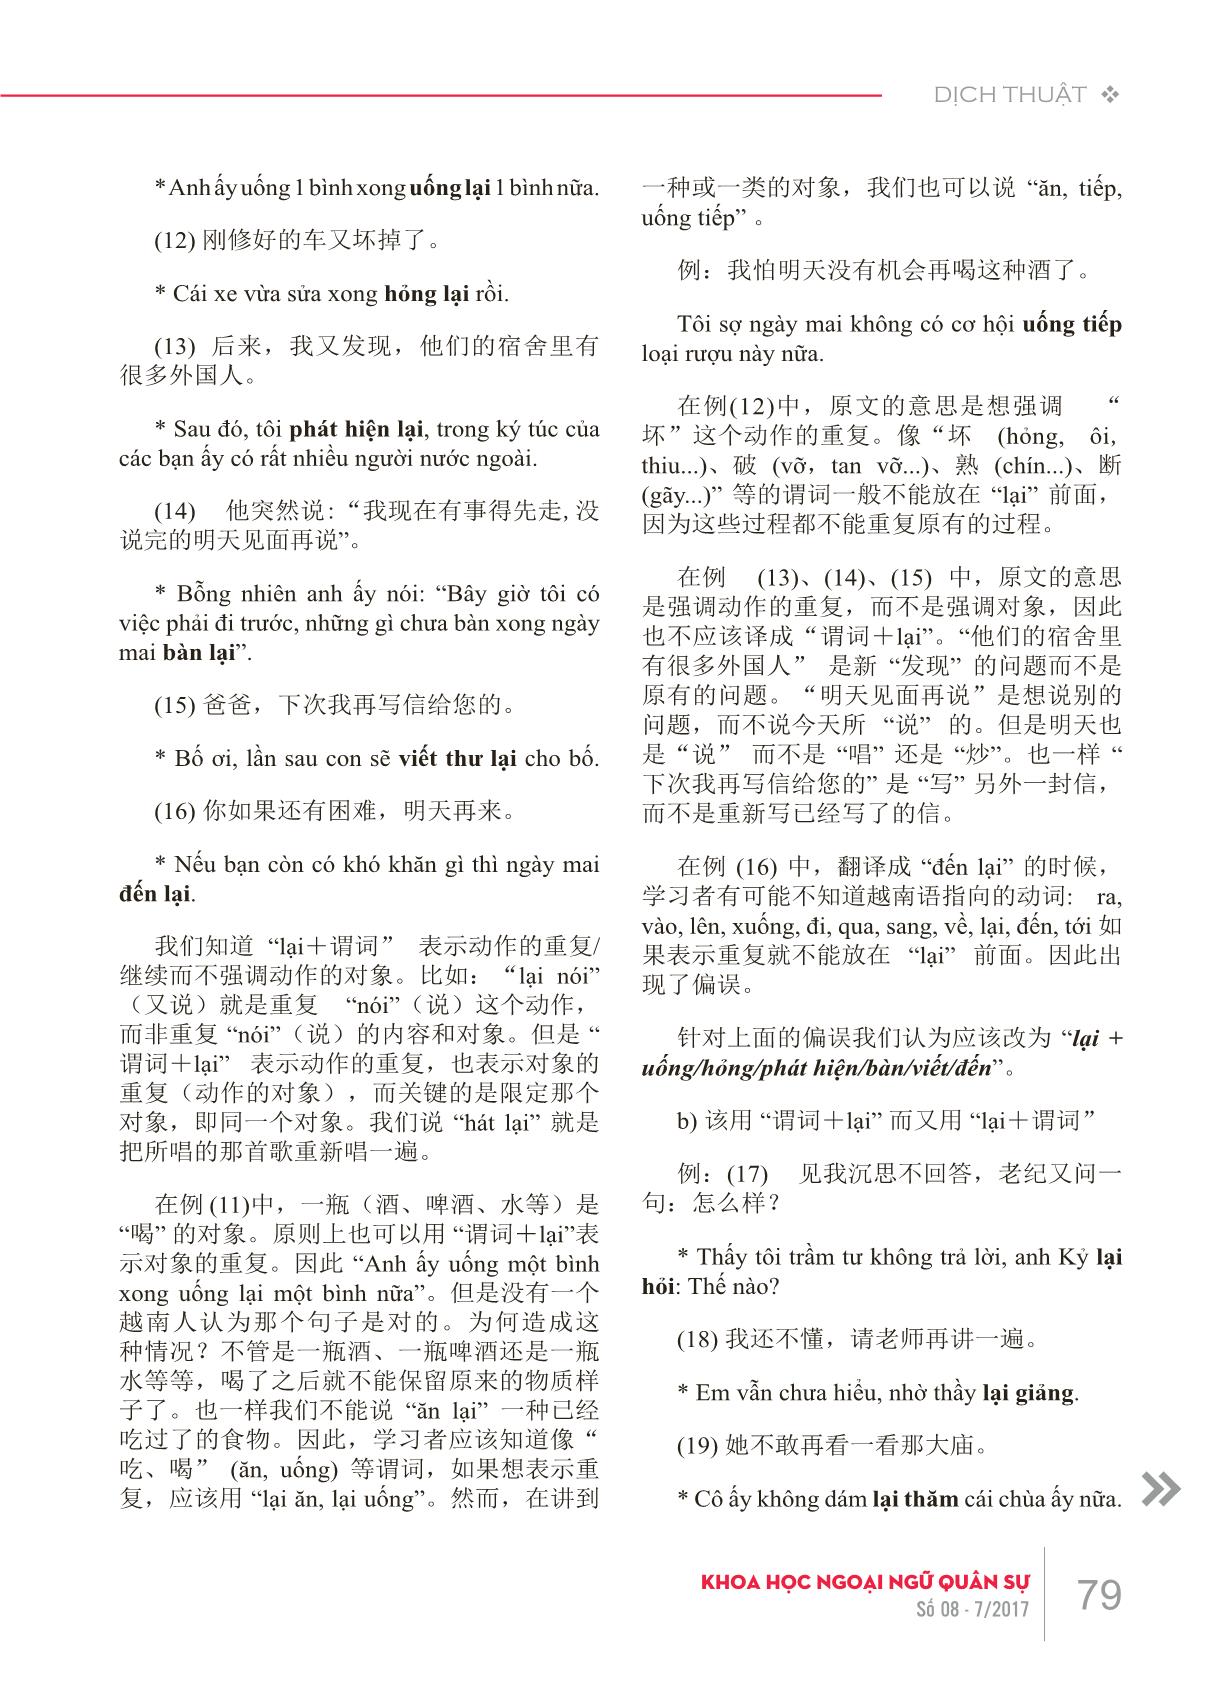 Phân tích lỗi của sinh viên Trung Quốc khi dịch trạng ngữ từ tiếng Trung Quốc sang tiếng Việt trang 4